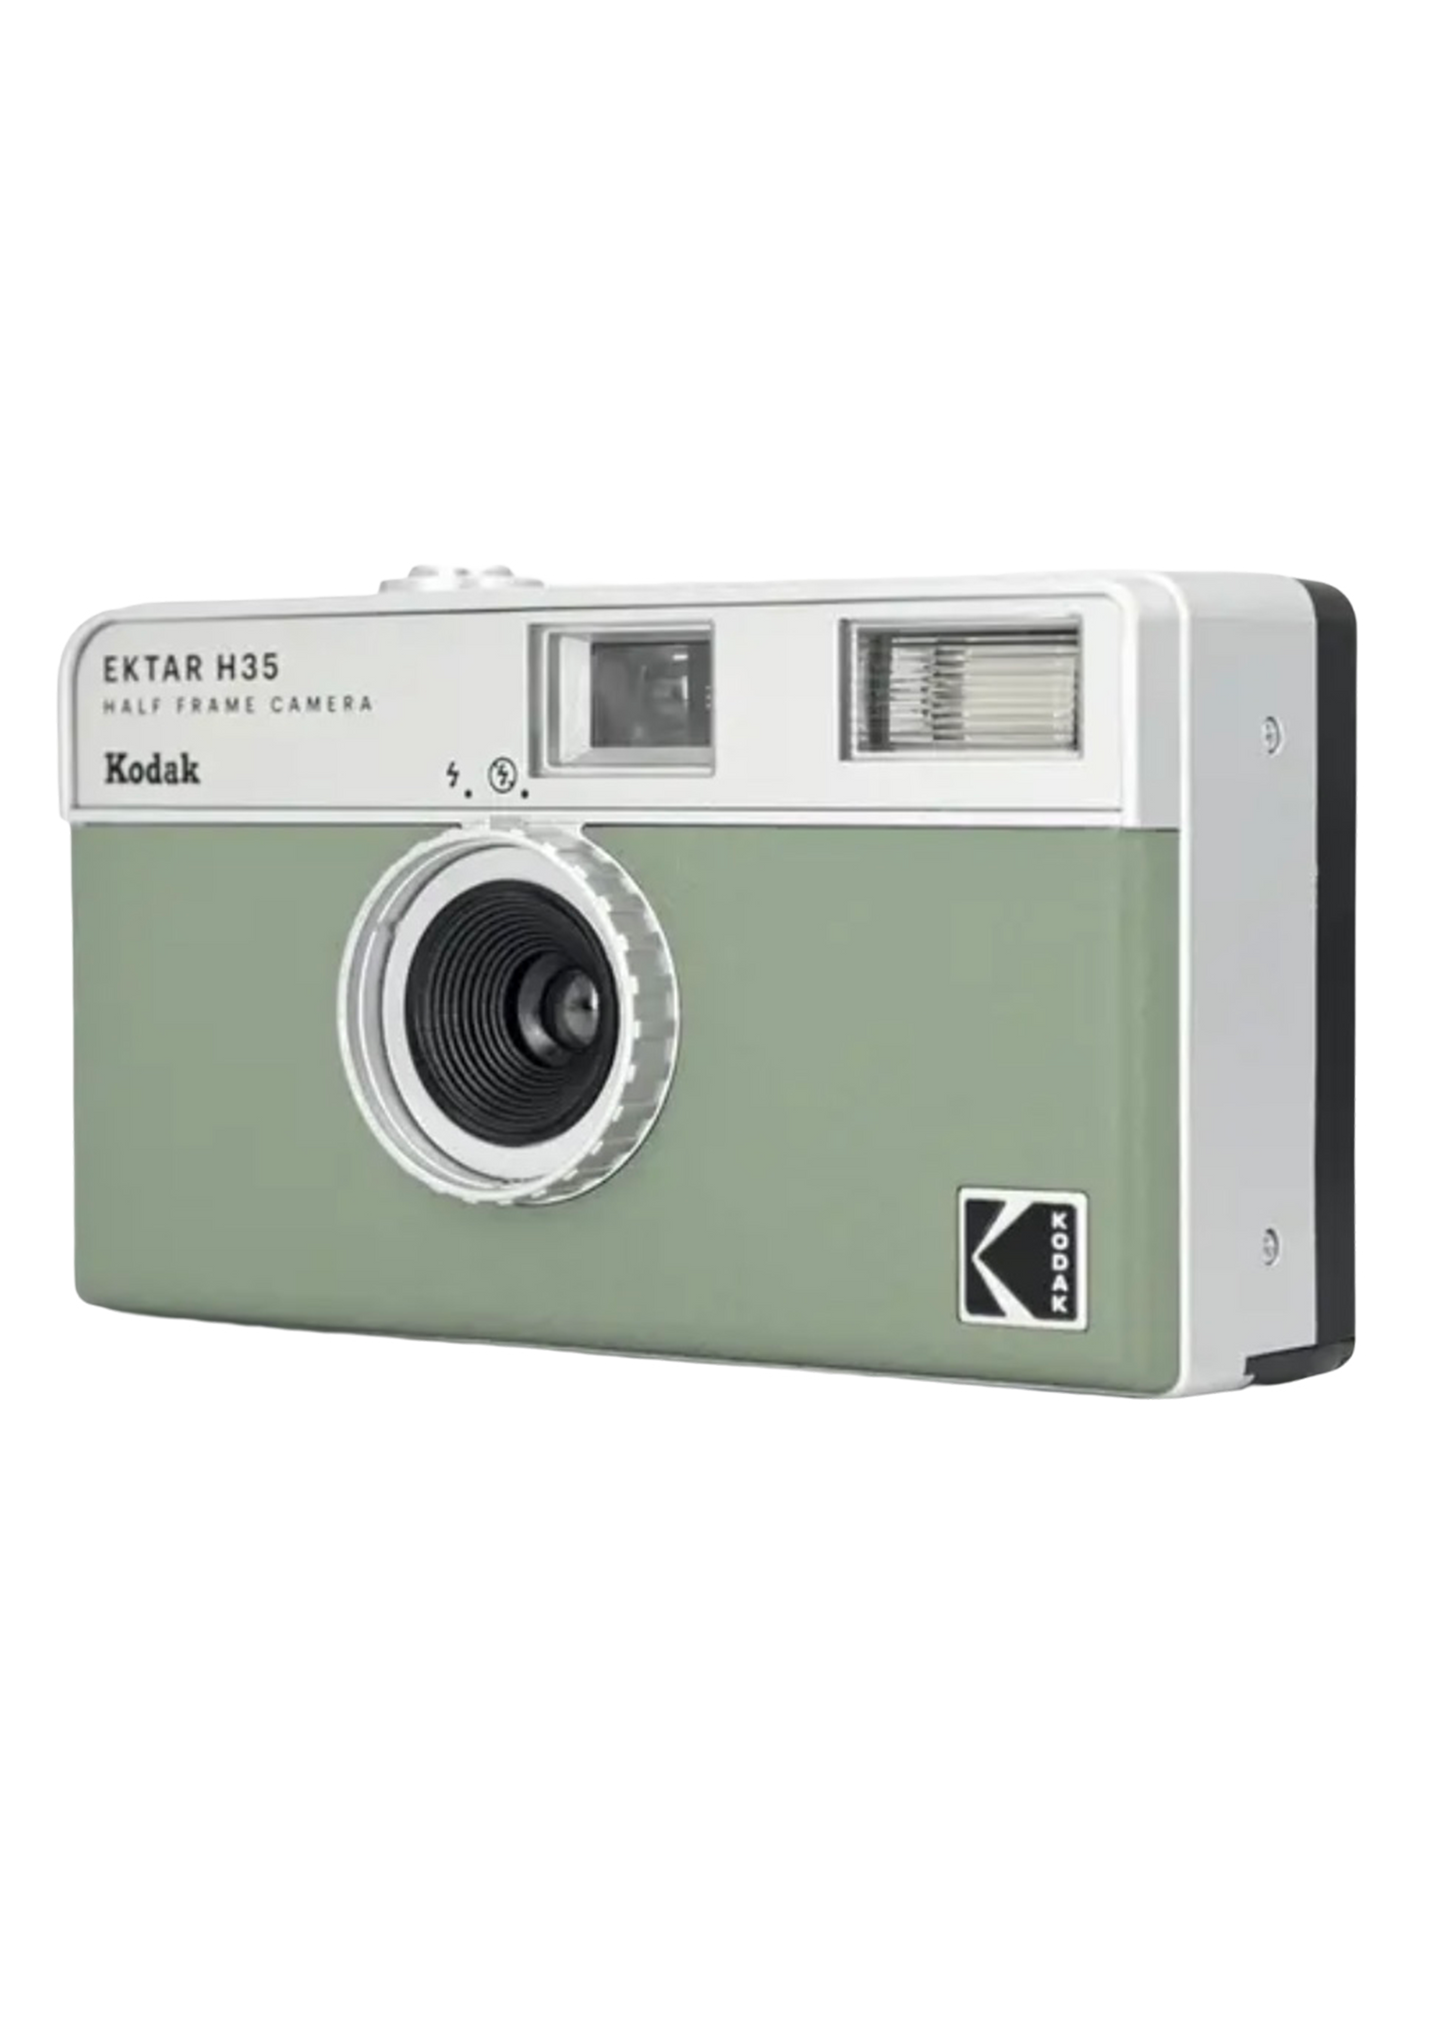 Kodak Ektar H35 Half Frame Camera